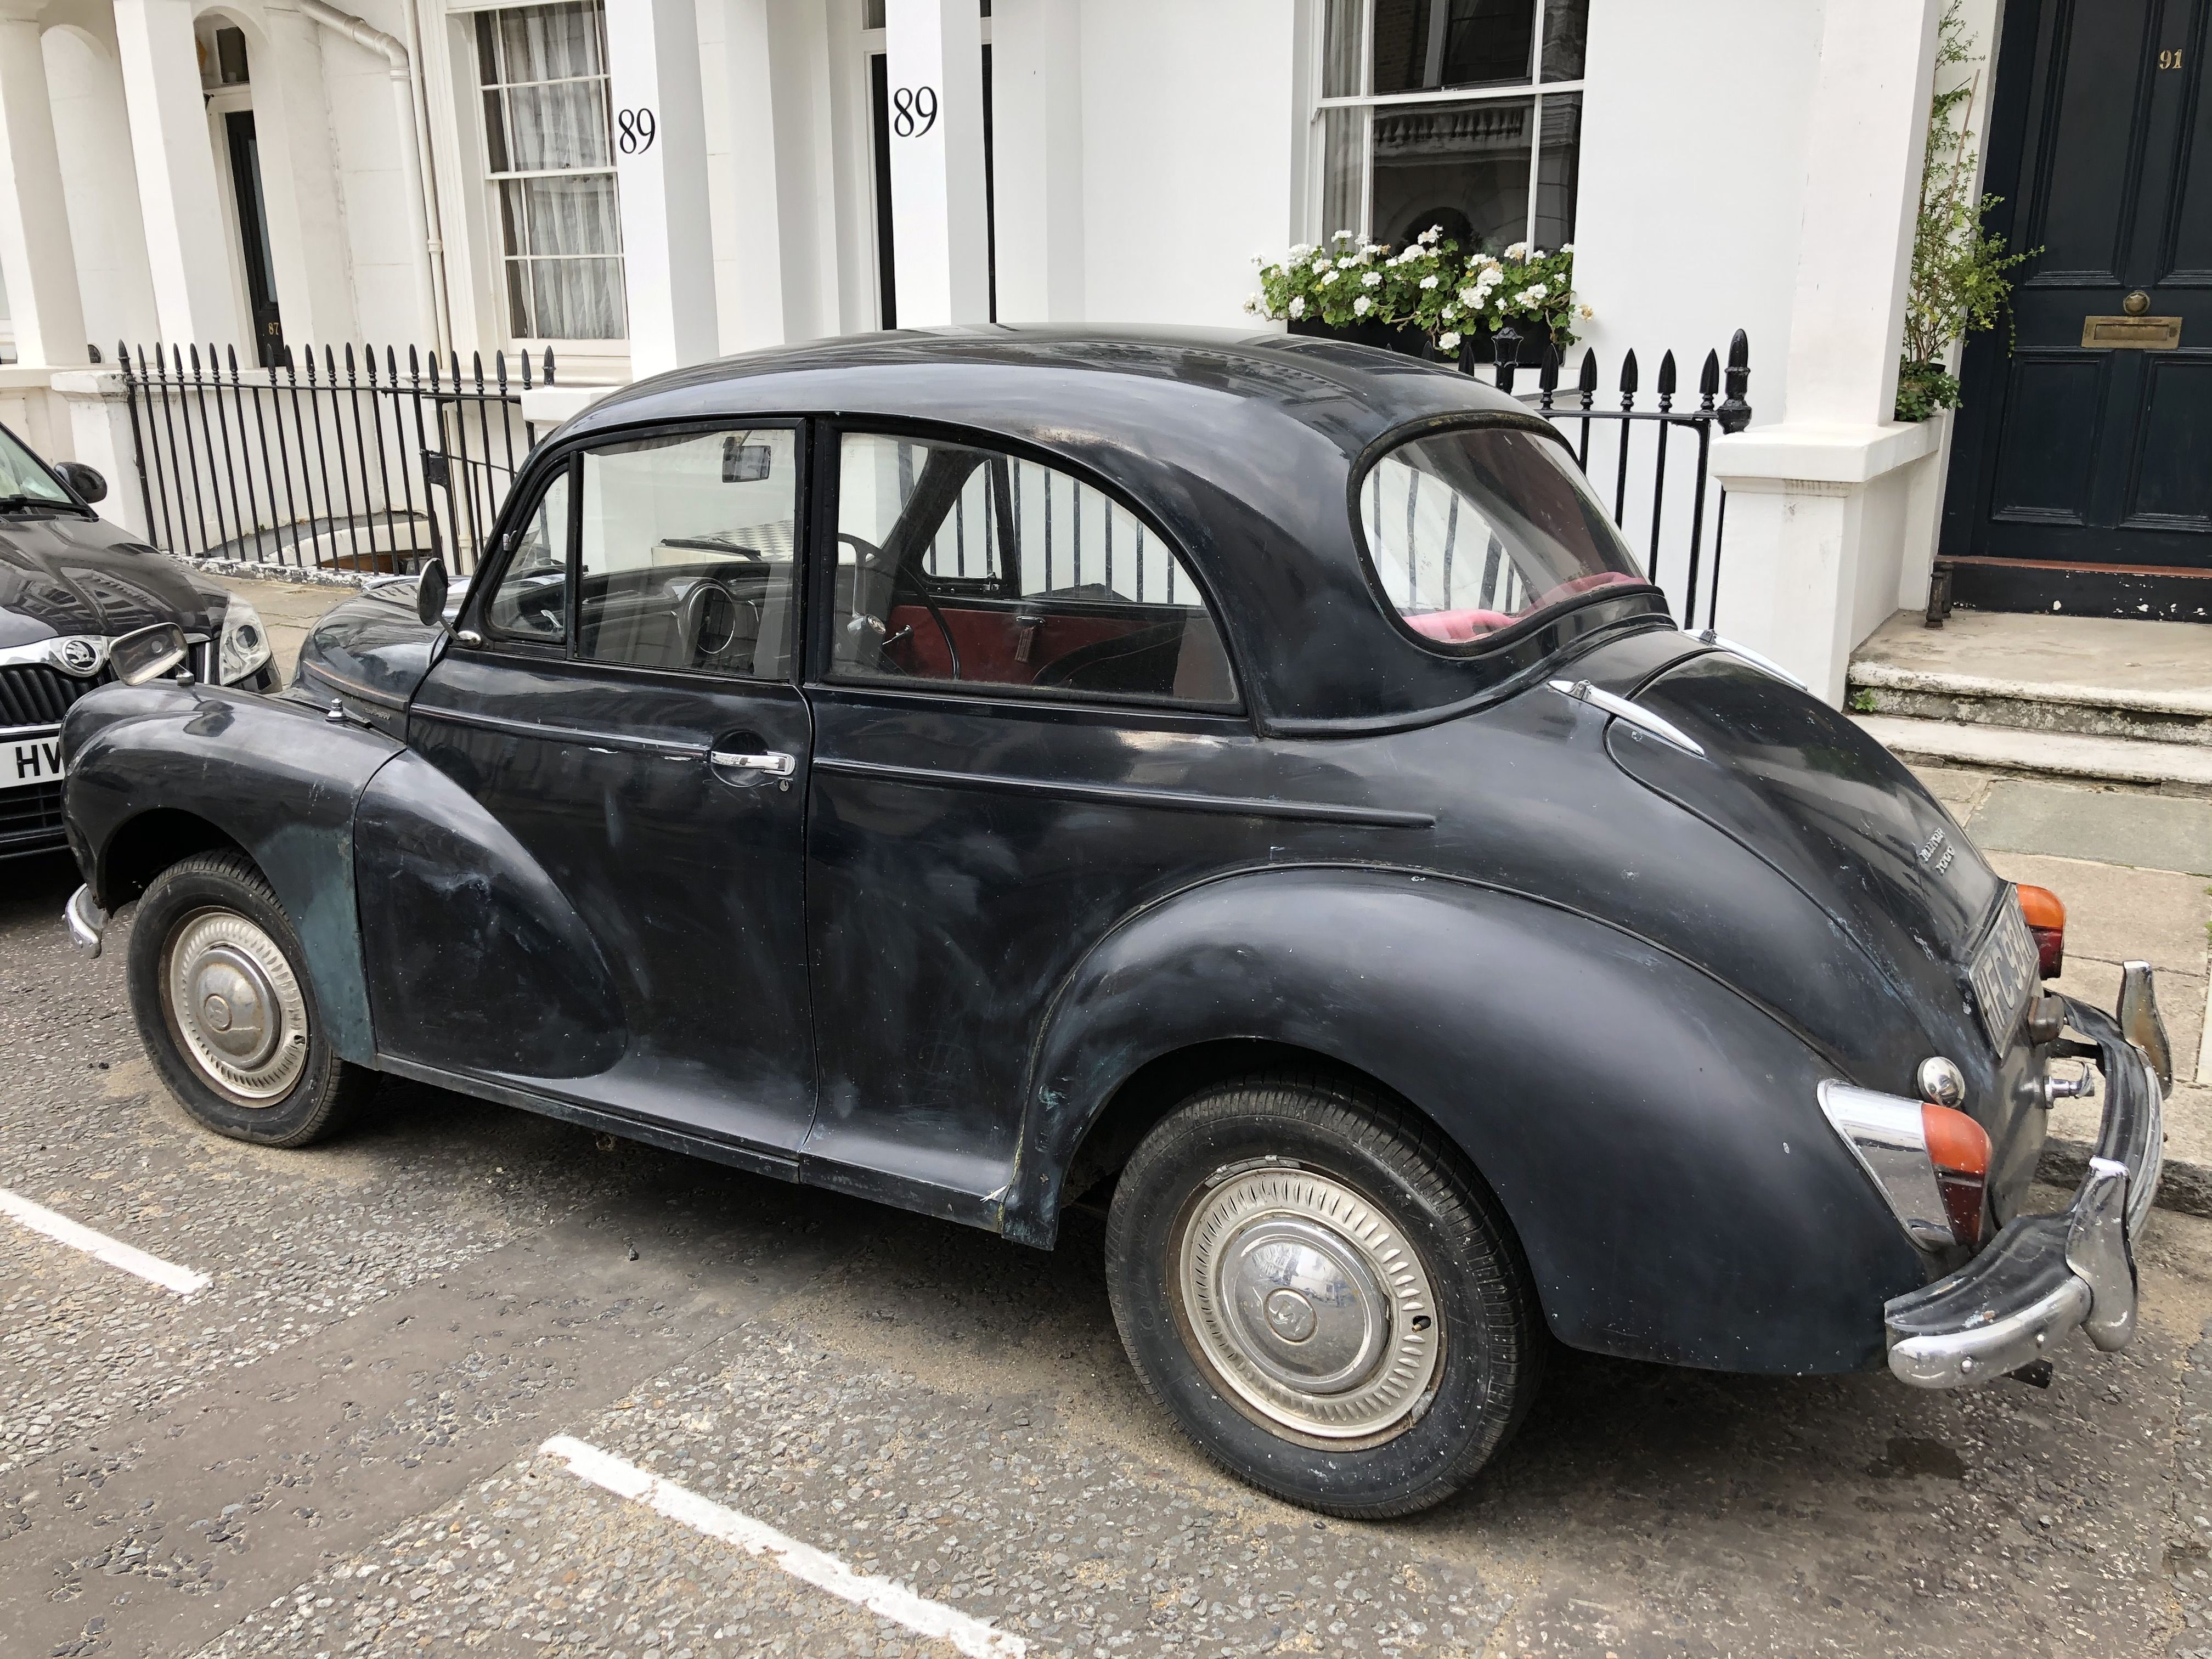 旧車 クラシックカー イギリス車 欧州車 シンプルライフ In ロンドン 楽天ブログ